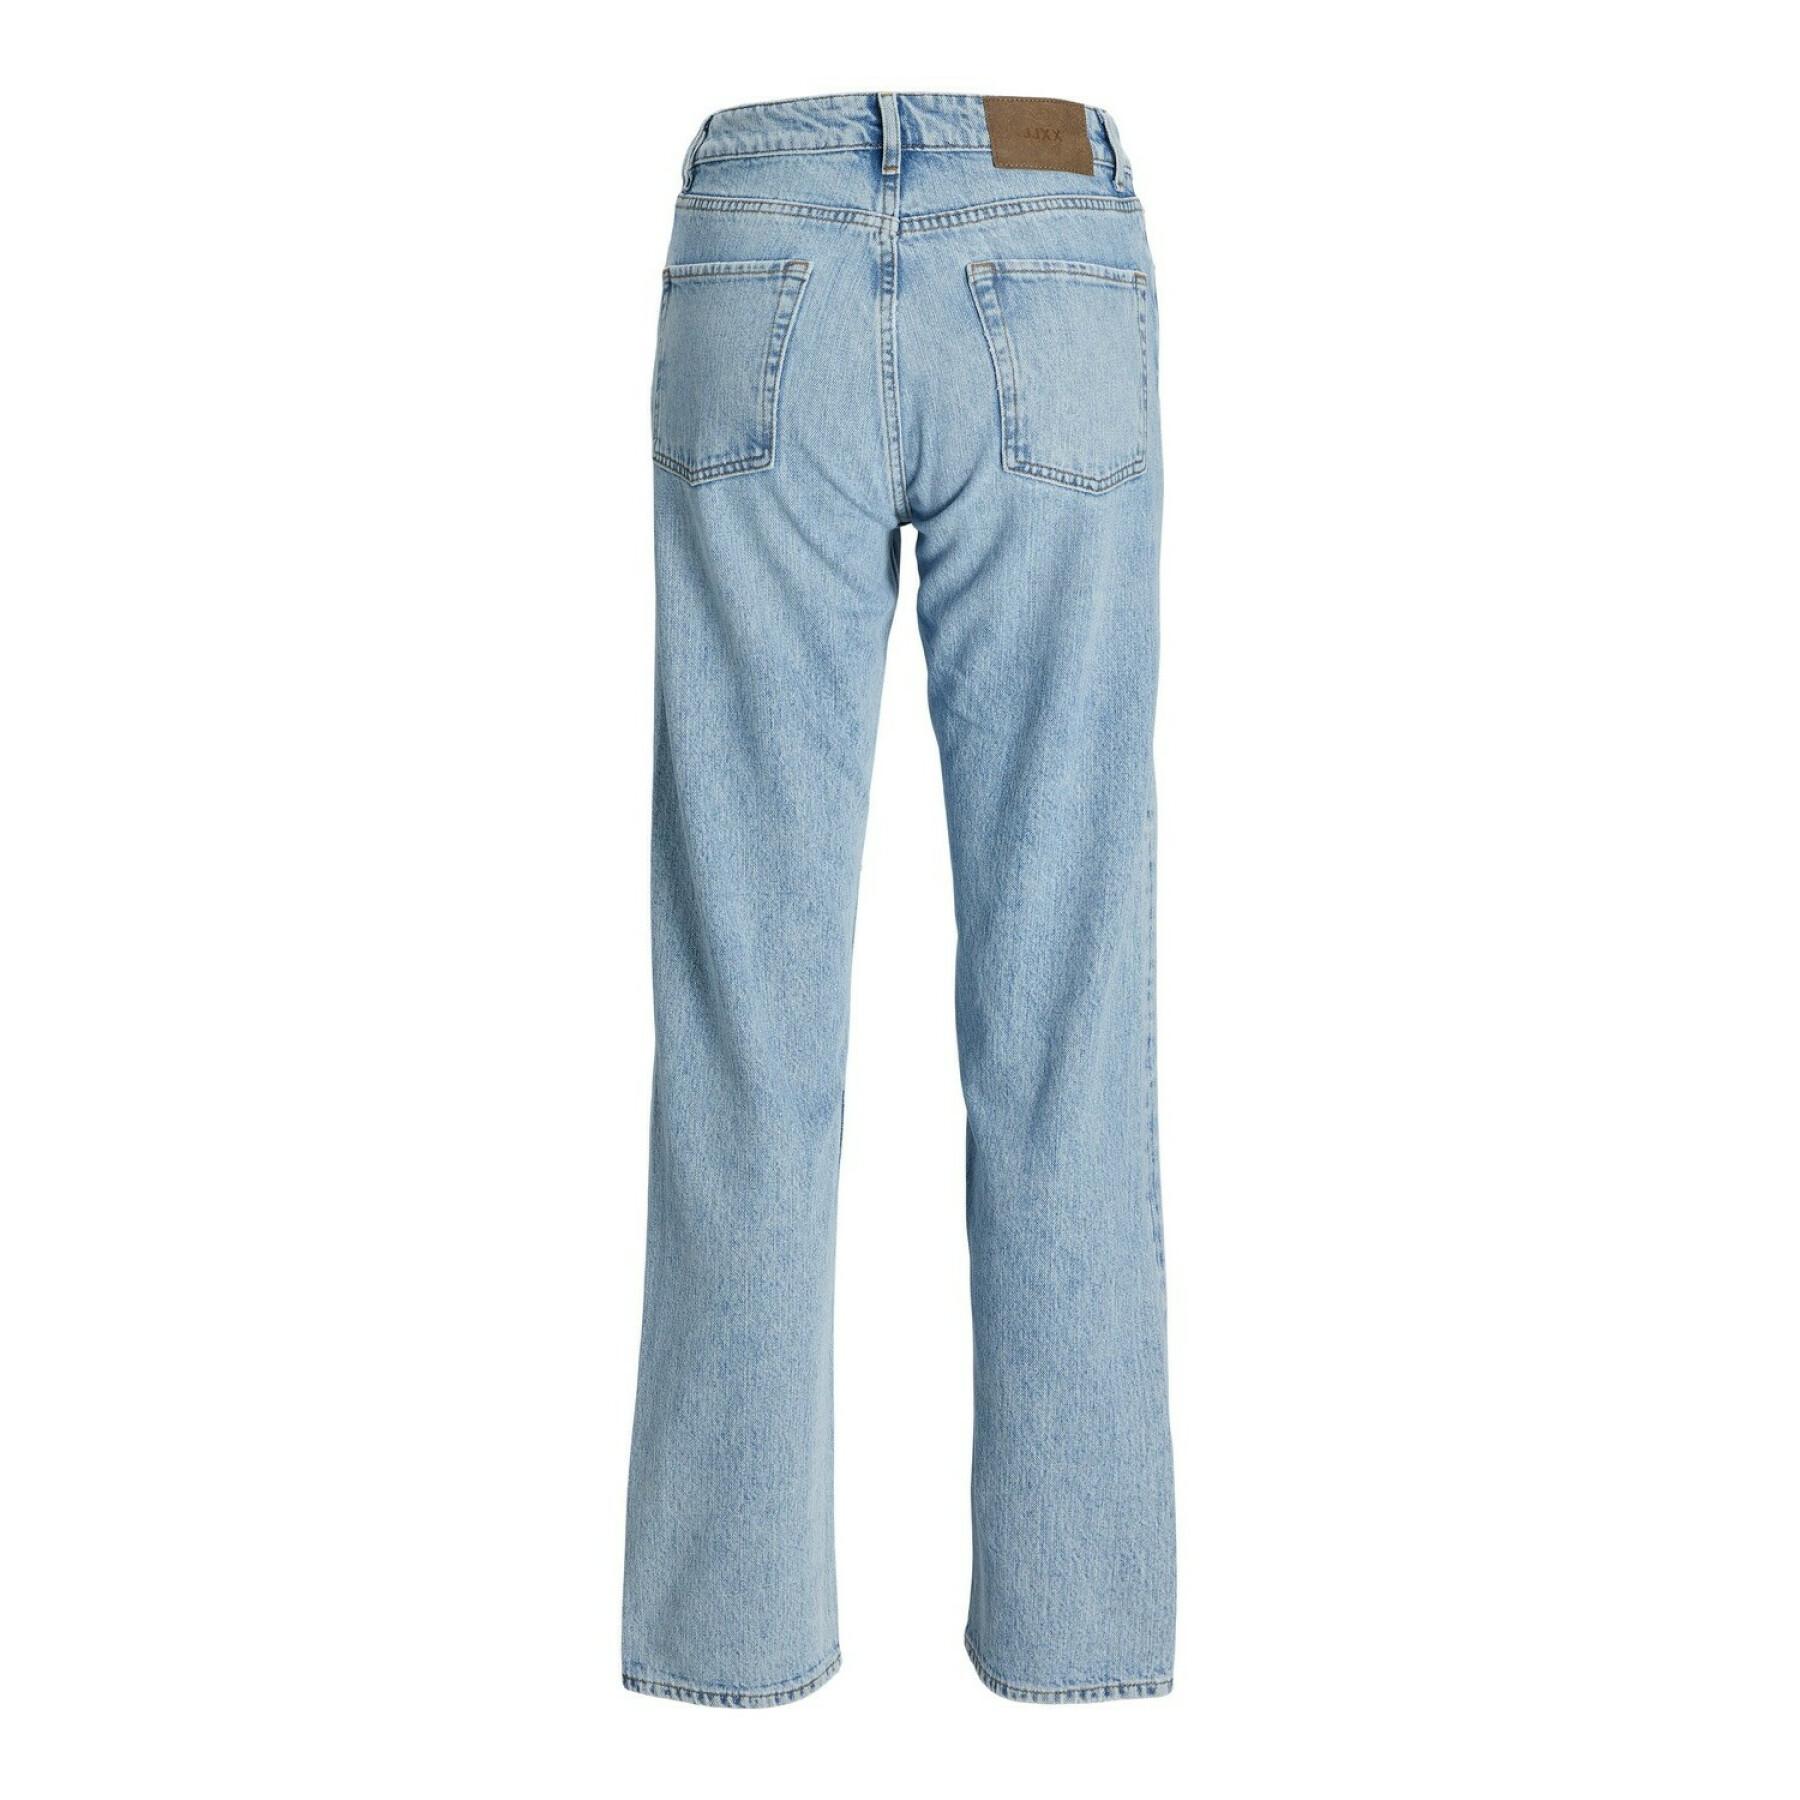 Rechte jeans voor dames JJXX seoul cr3007